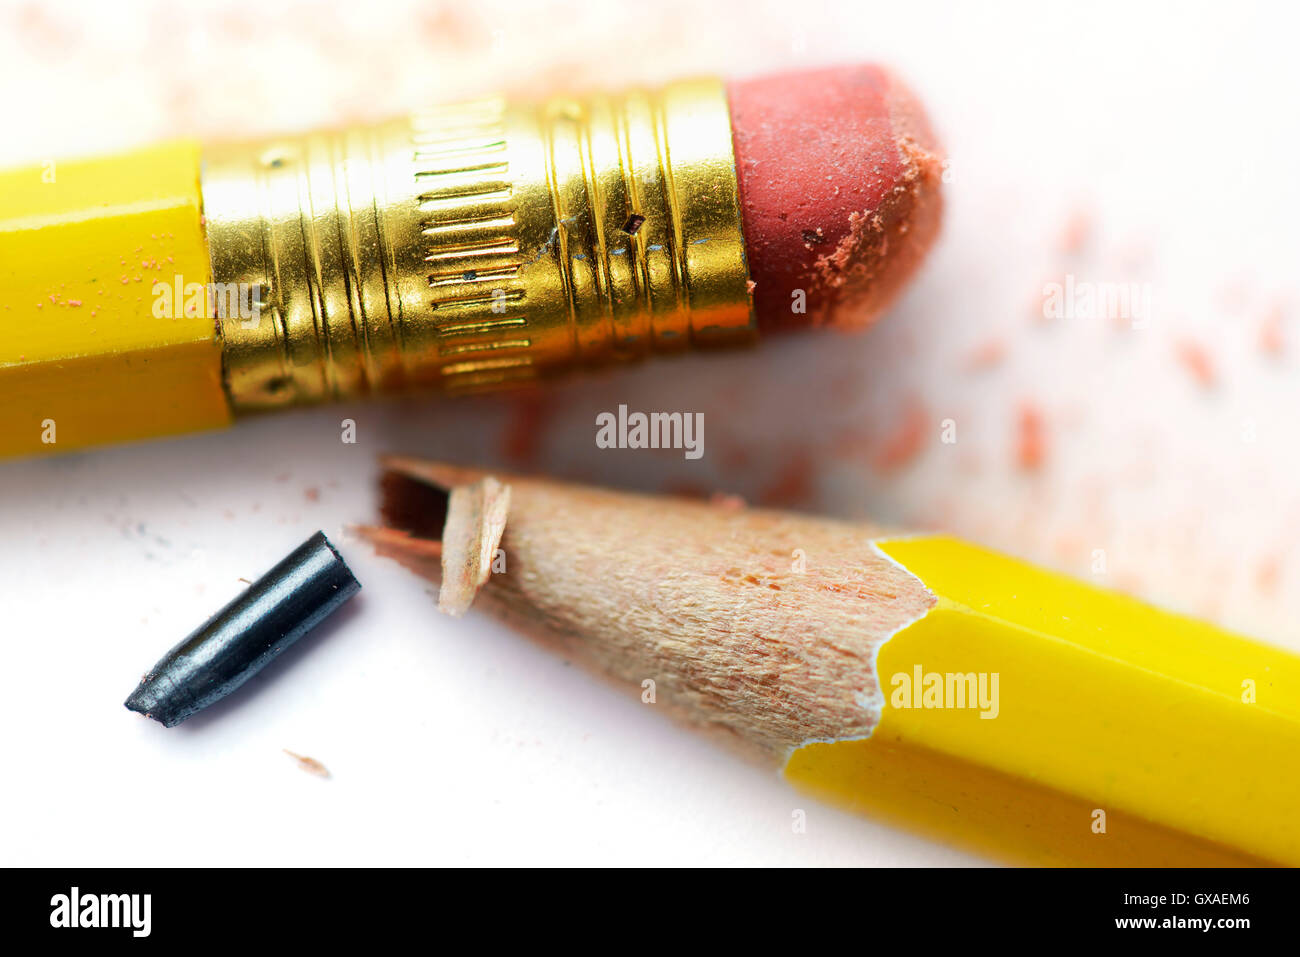 Durchgebrochener Bleistift, Satireskandal Stock Photo